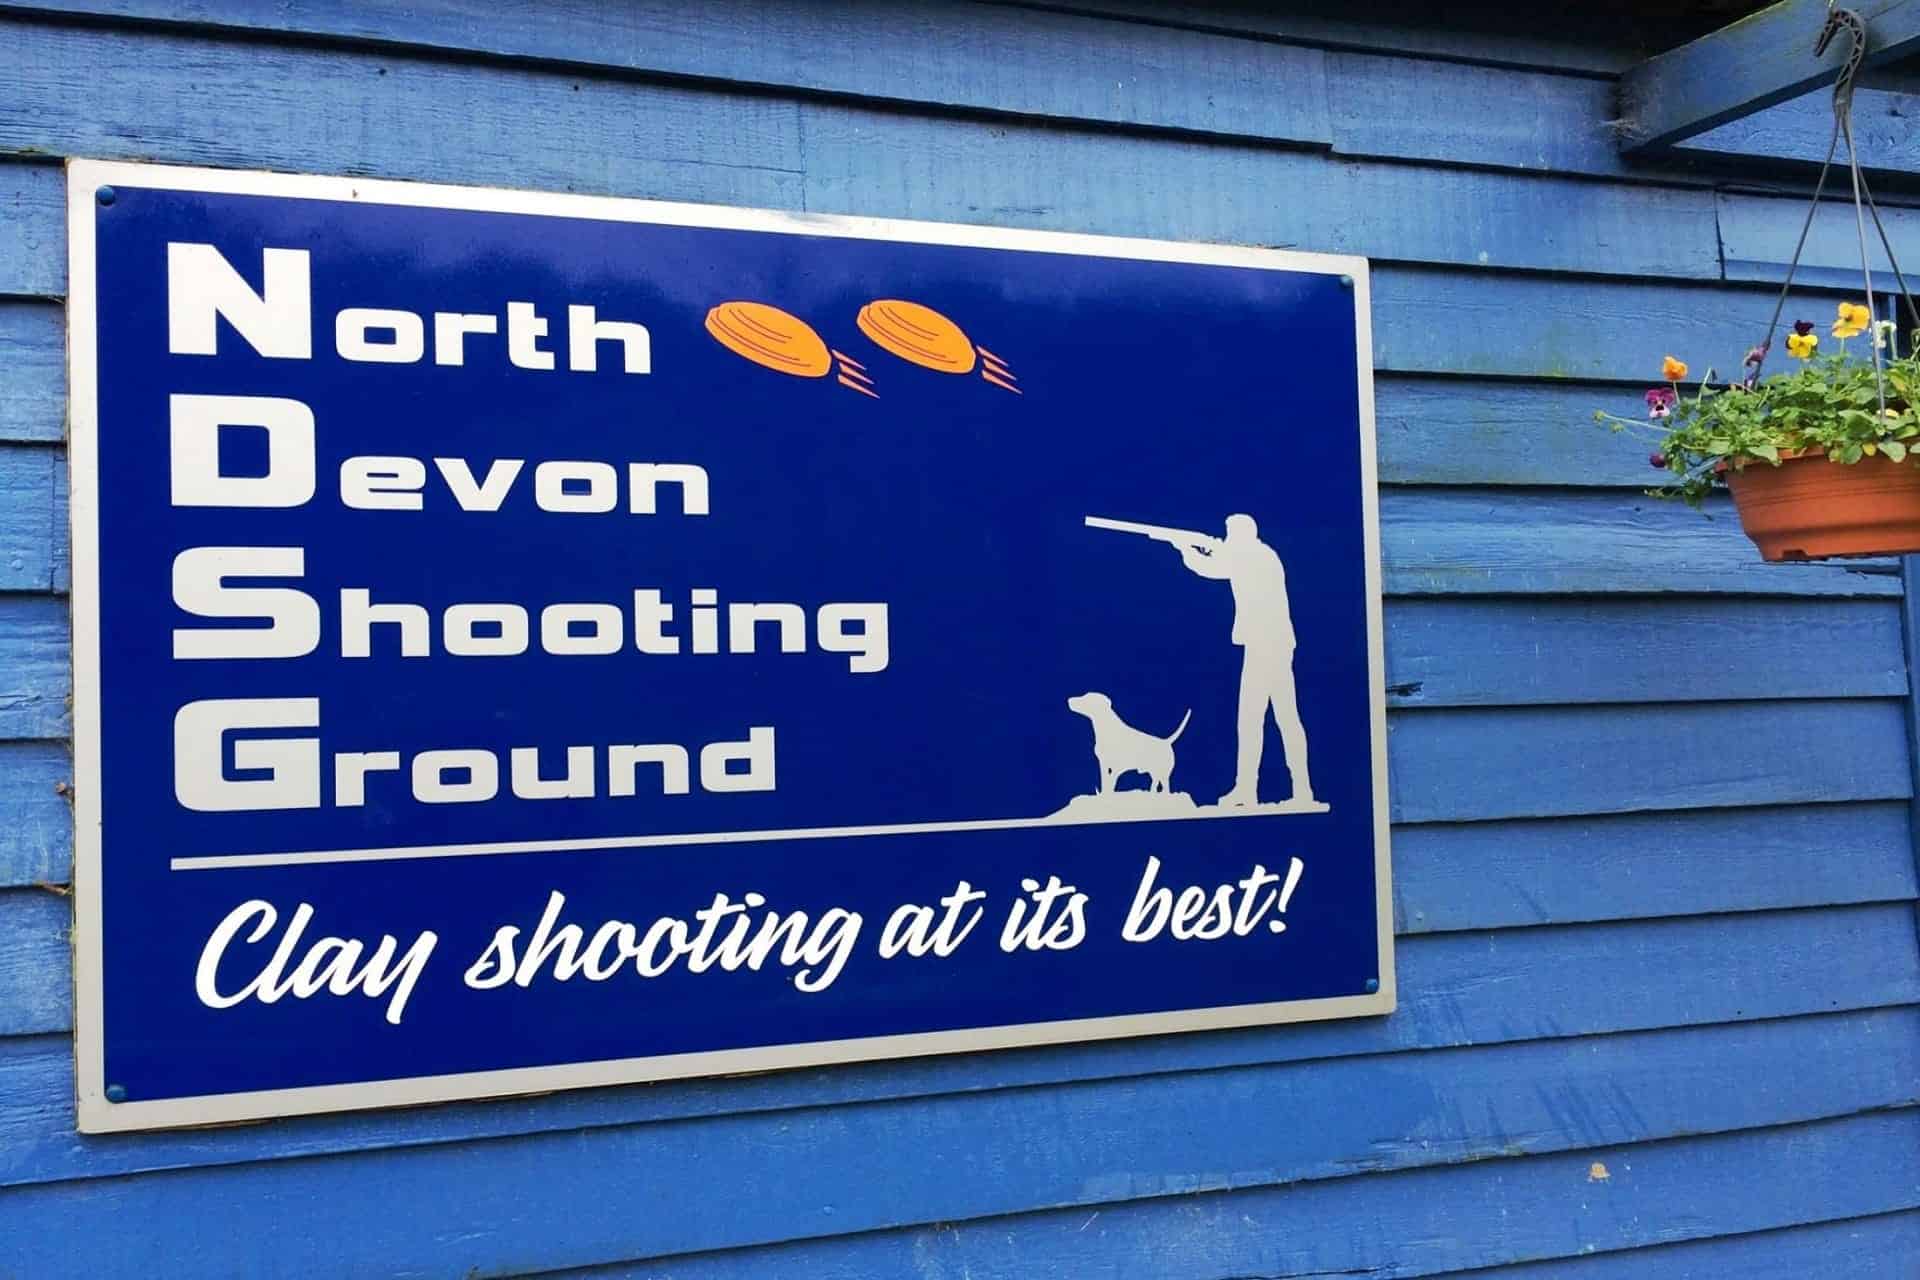 North Devon Shooting Ground in UK